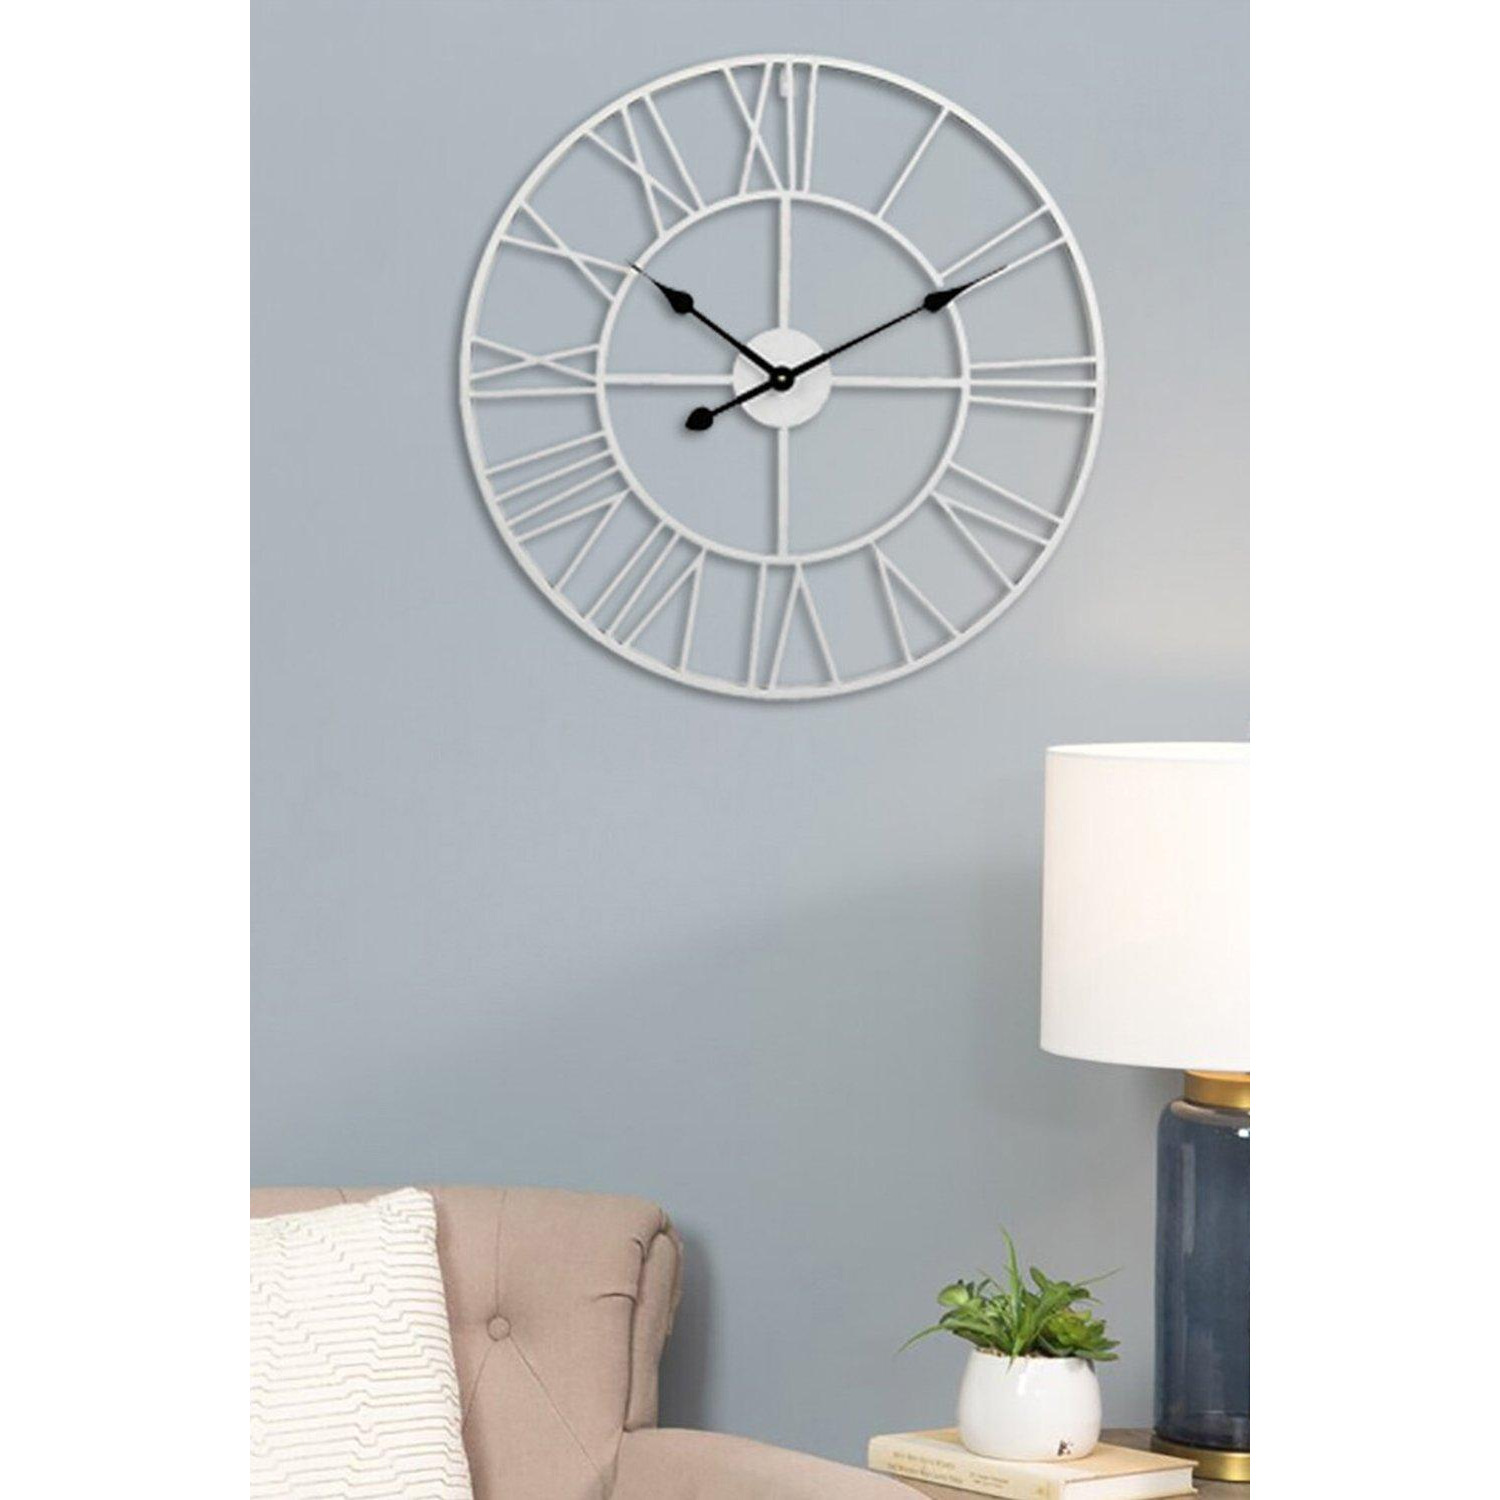 40cm Dia Round White Roman Numeral Skeleton Wall Clock with Black Needle - image 1